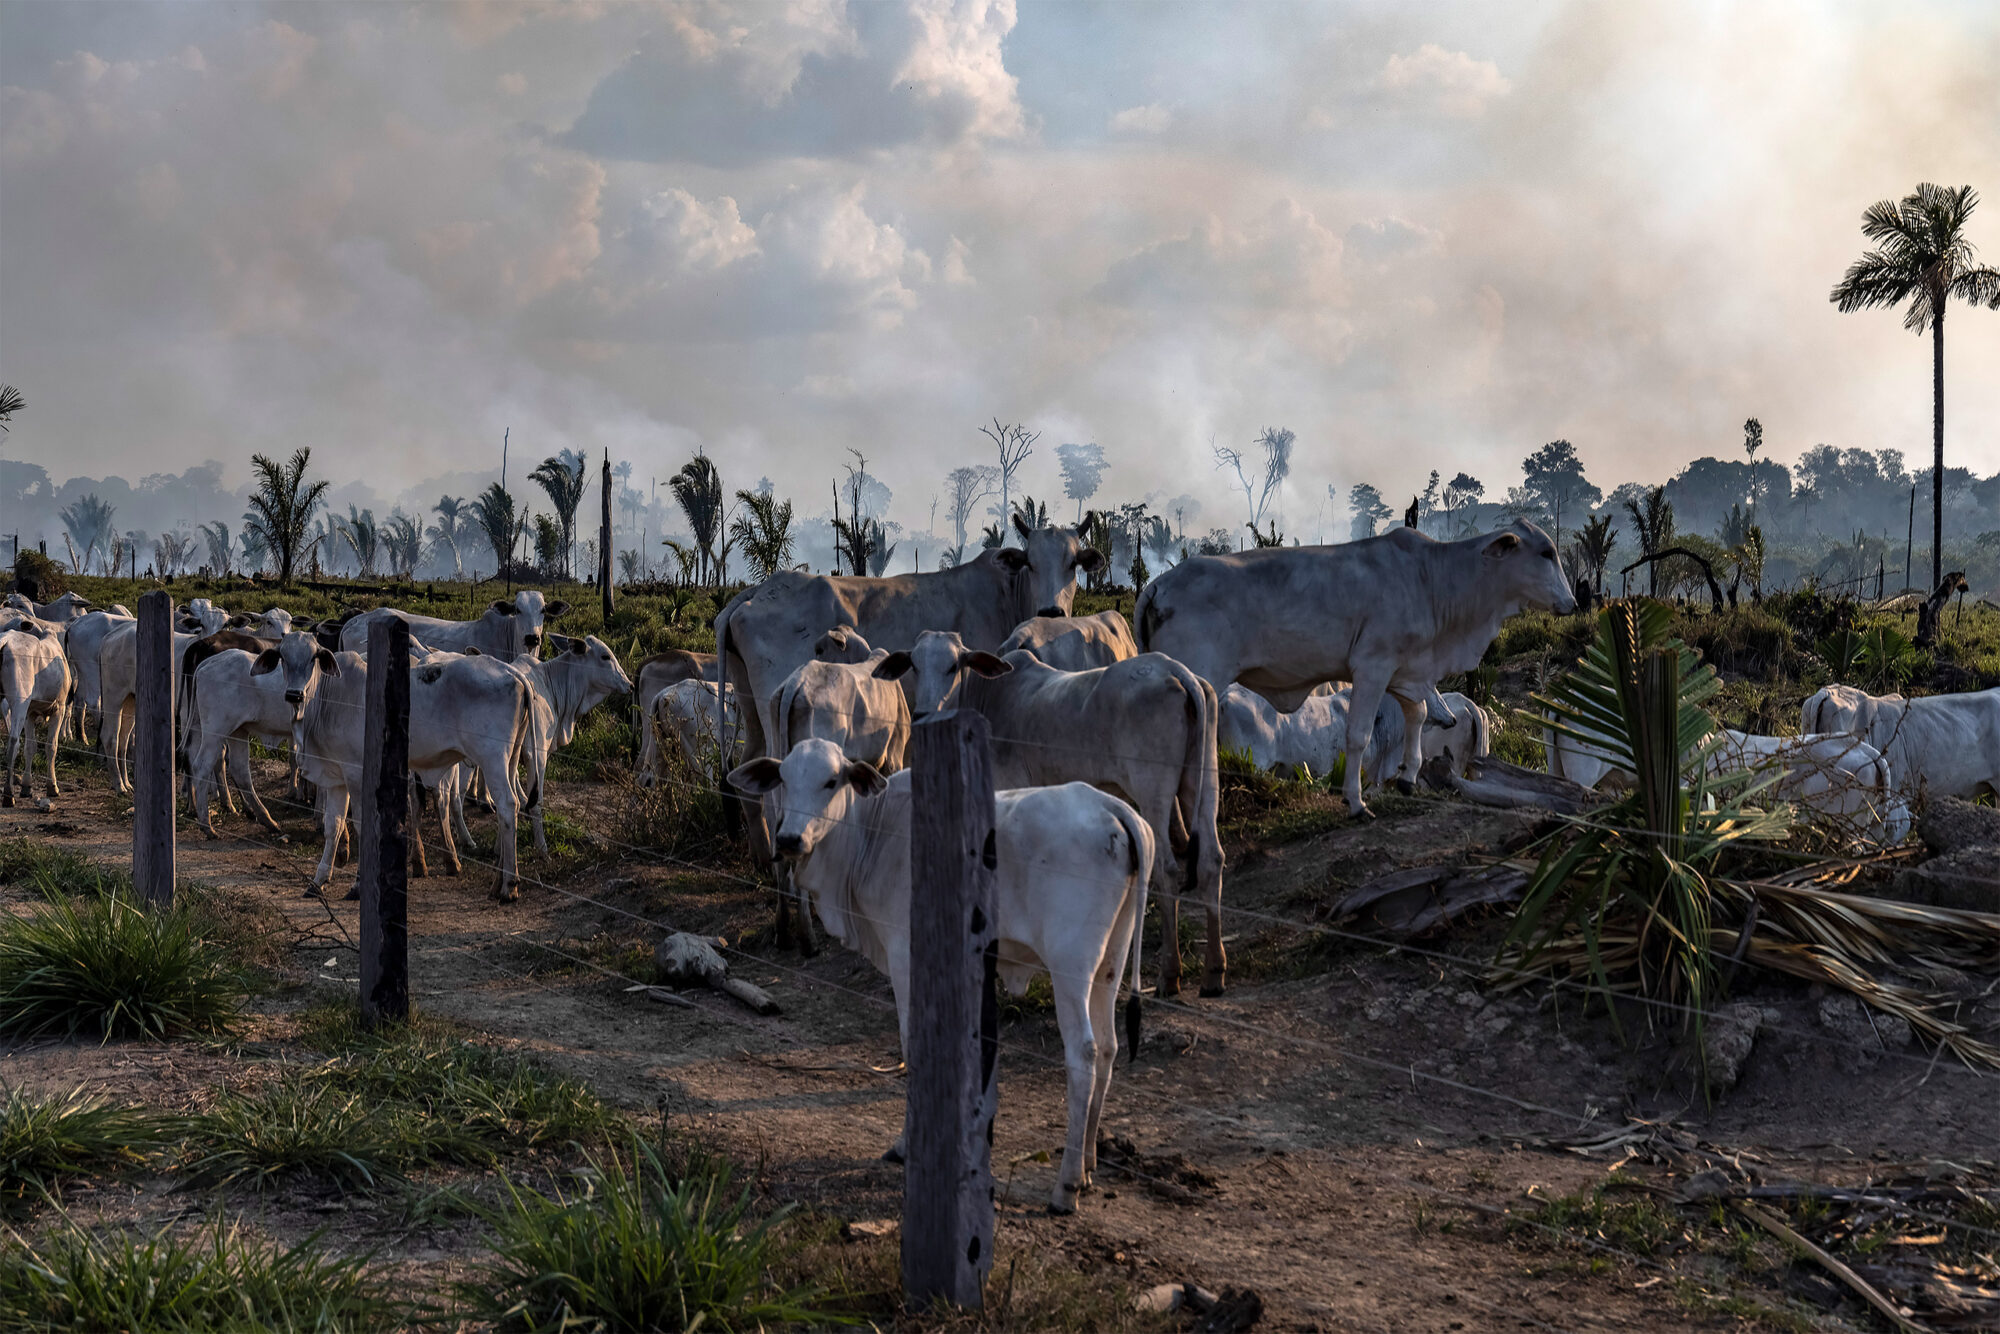 <p><span style="font-weight: 400;">Ganado en un terreno lindante a uno recientemente deforestado y quemado en Candeias do Jamari, estado de Rondônia, Brasil. La ganadería es responsable del 80% de la deforestación de la Amazonía brasileña (Imagen © Victor Moriyama / Amazônia em Chamas)</span><span style="font-weight: 400;"><br /> </span></p>